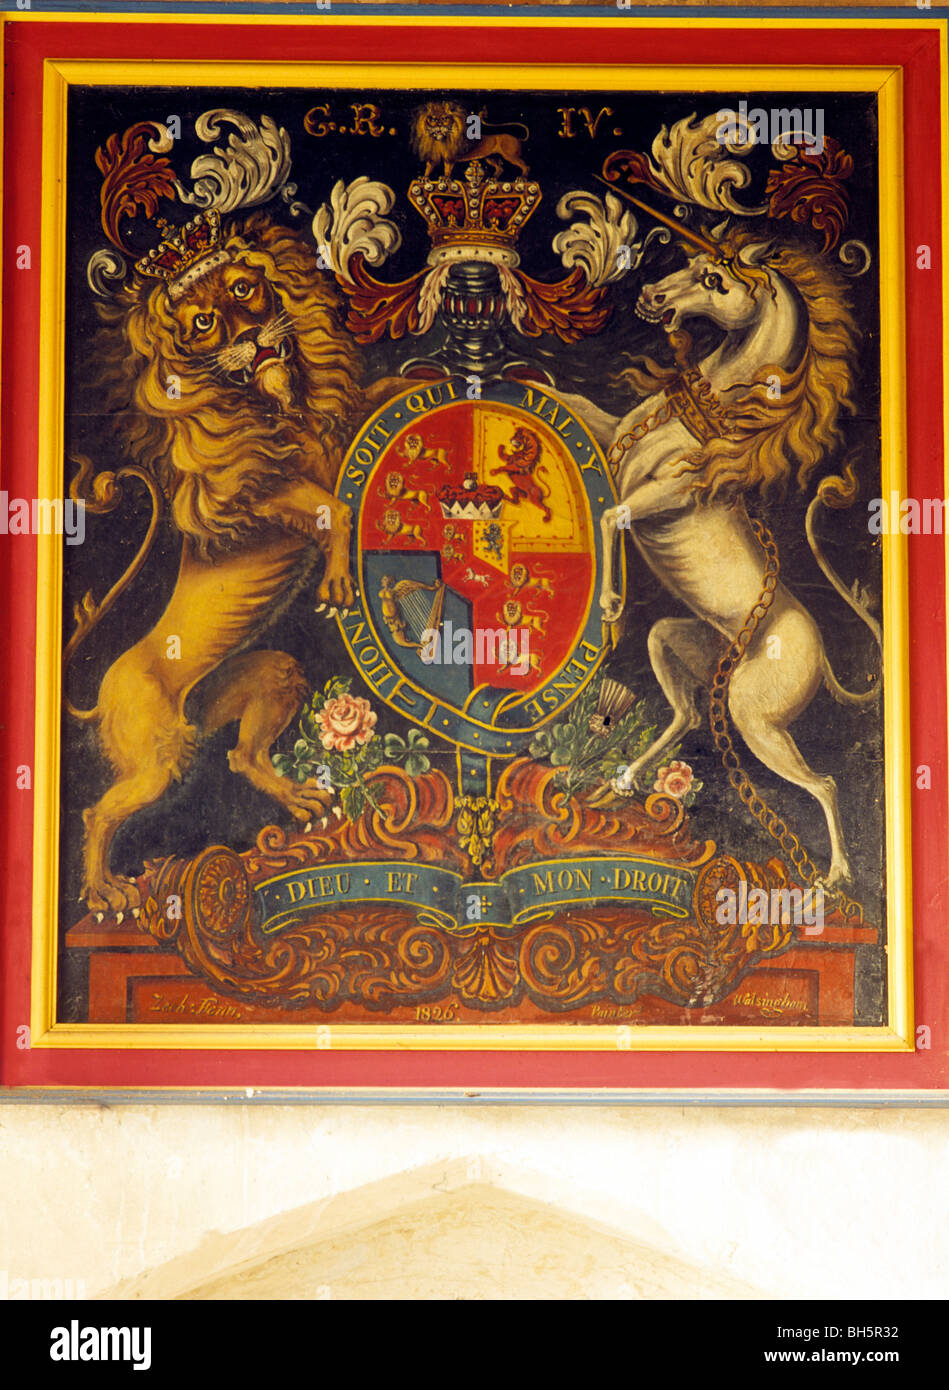 Burnham Norton, armoiries du roi George IV armoiries royales héraldique héraldique anglais appareil lions lion périphériques licornes unicorn Banque D'Images